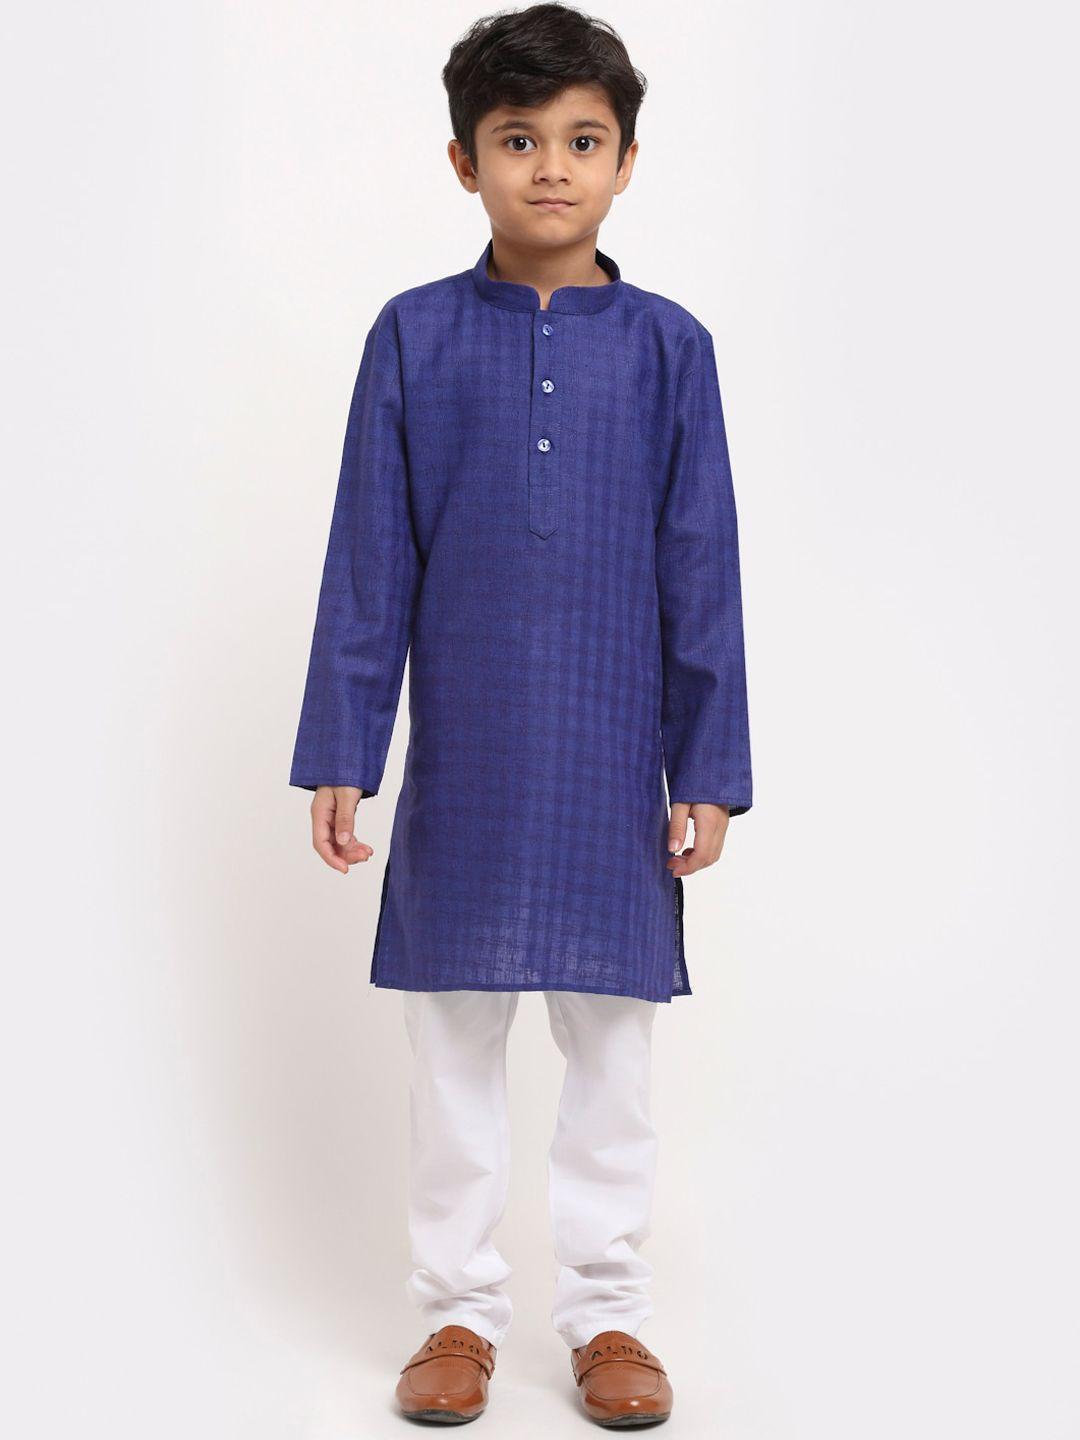 kraft india boys navy blue regular pure cotton kurta with pyjamas